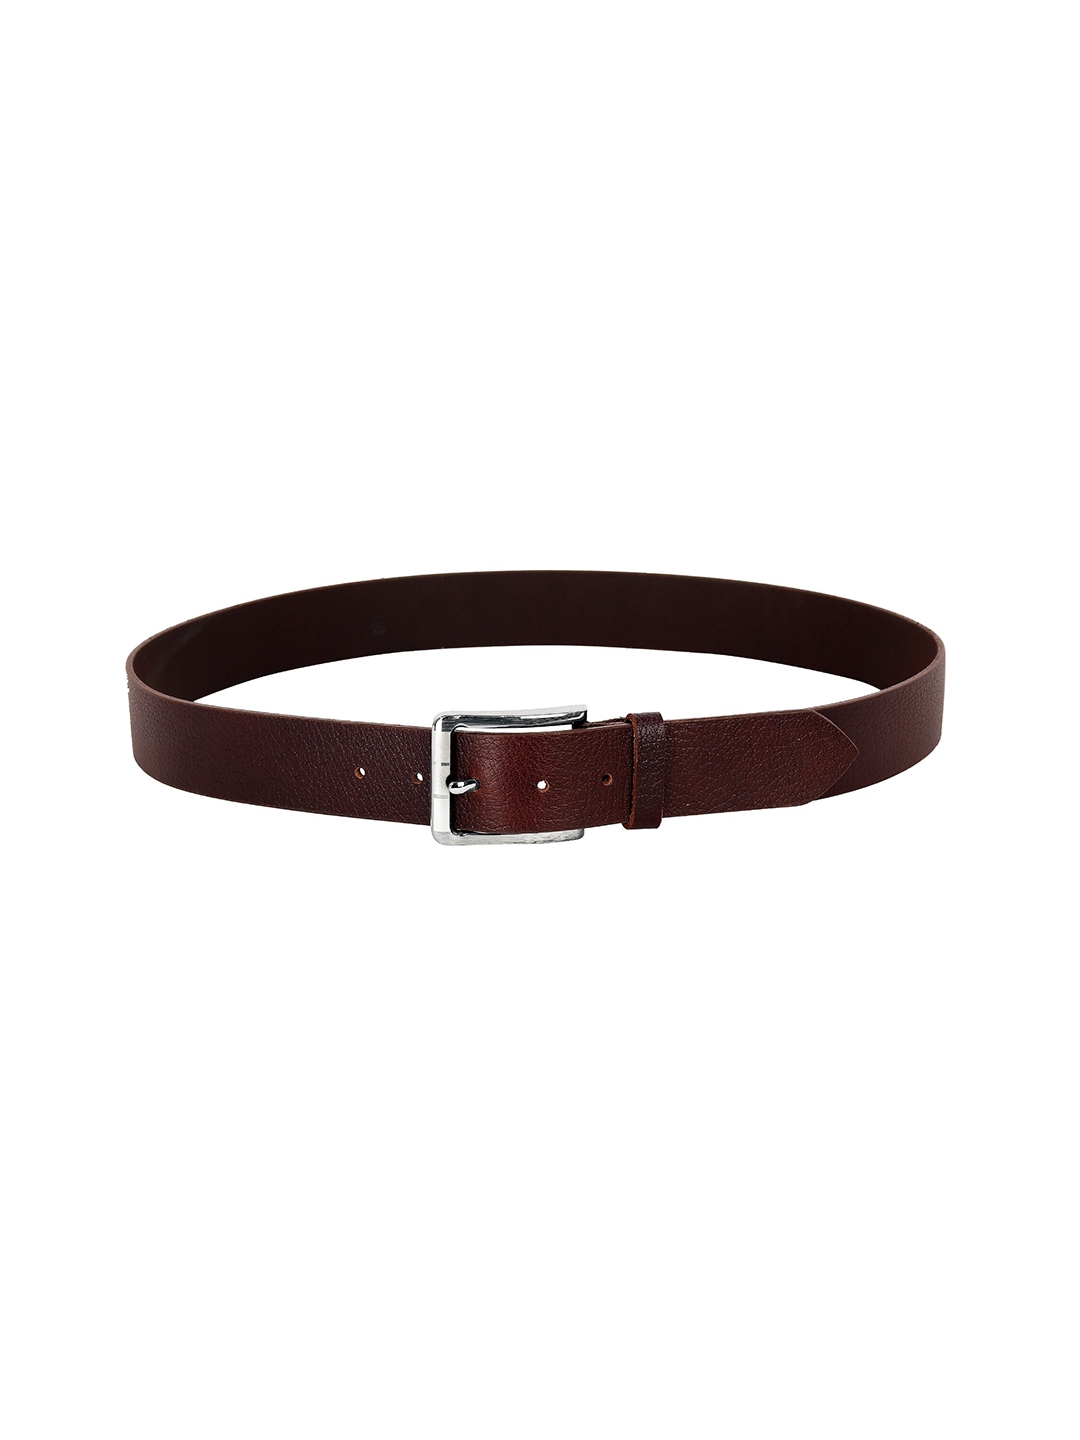 Buy Leather World Men Leather Formal Belt - Belts for Men 21248860 | Myntra